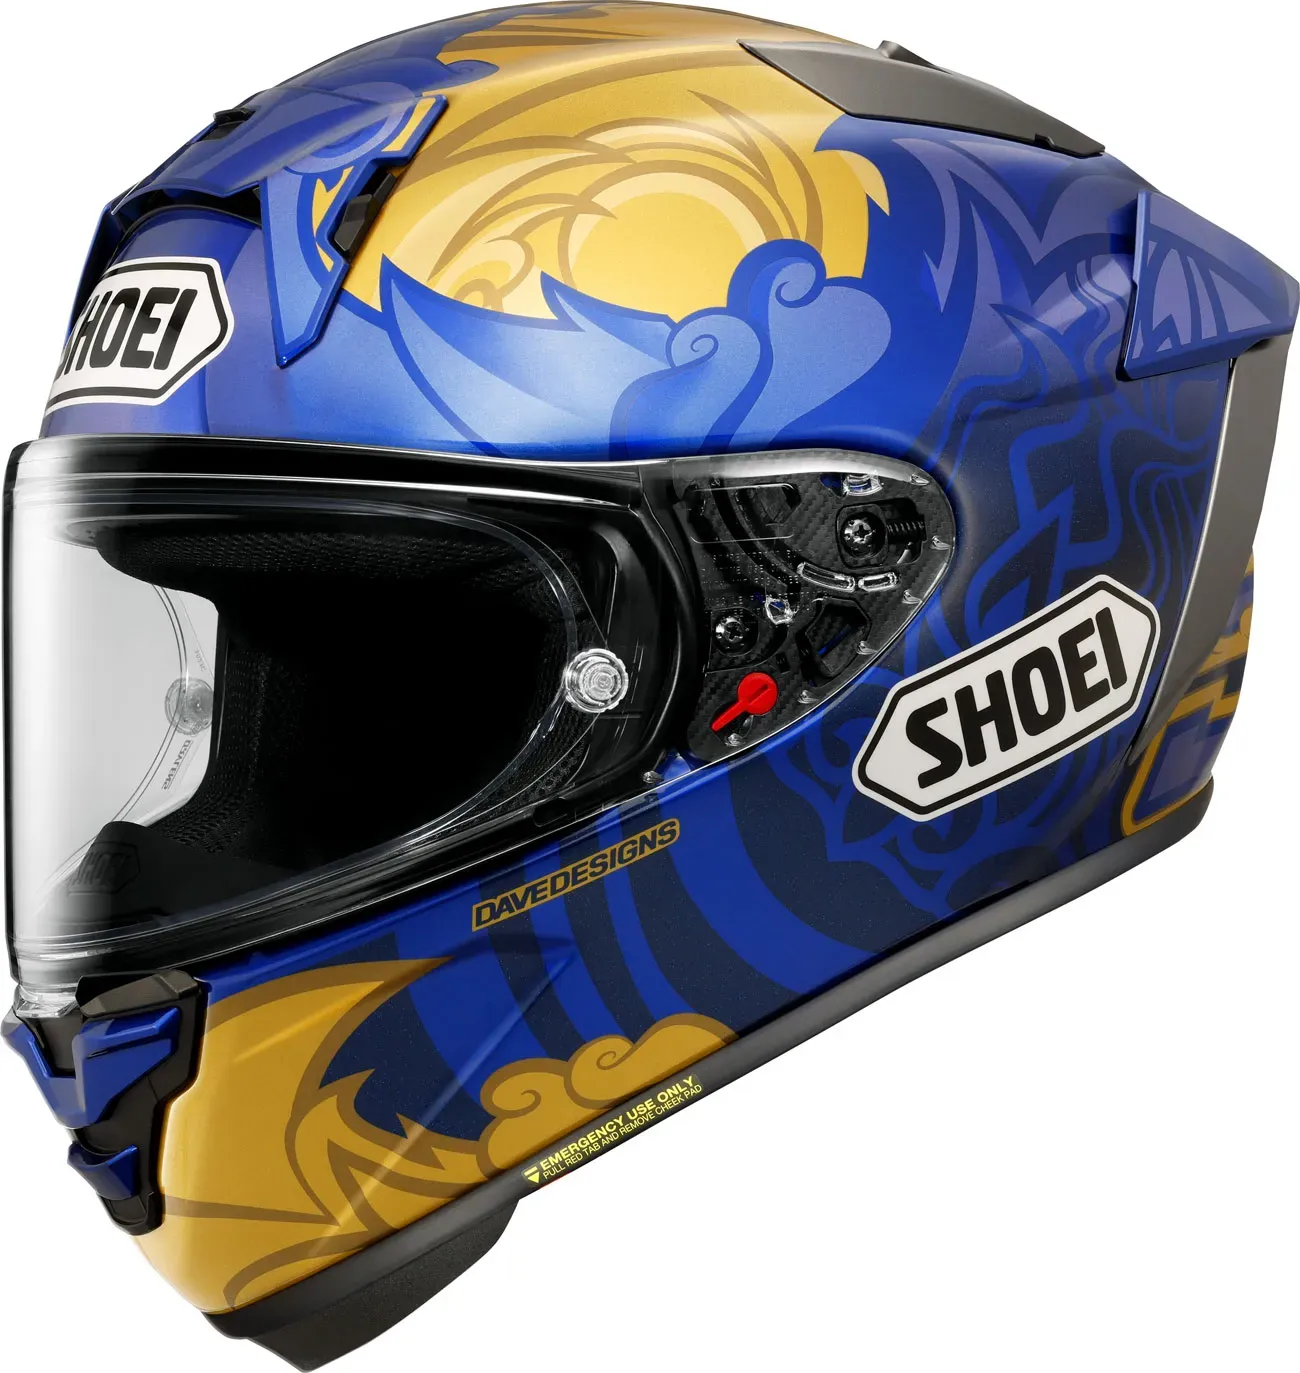 Shoei X-SPR Pro Marquez Thai, casque intégral - Bleu/Or - M